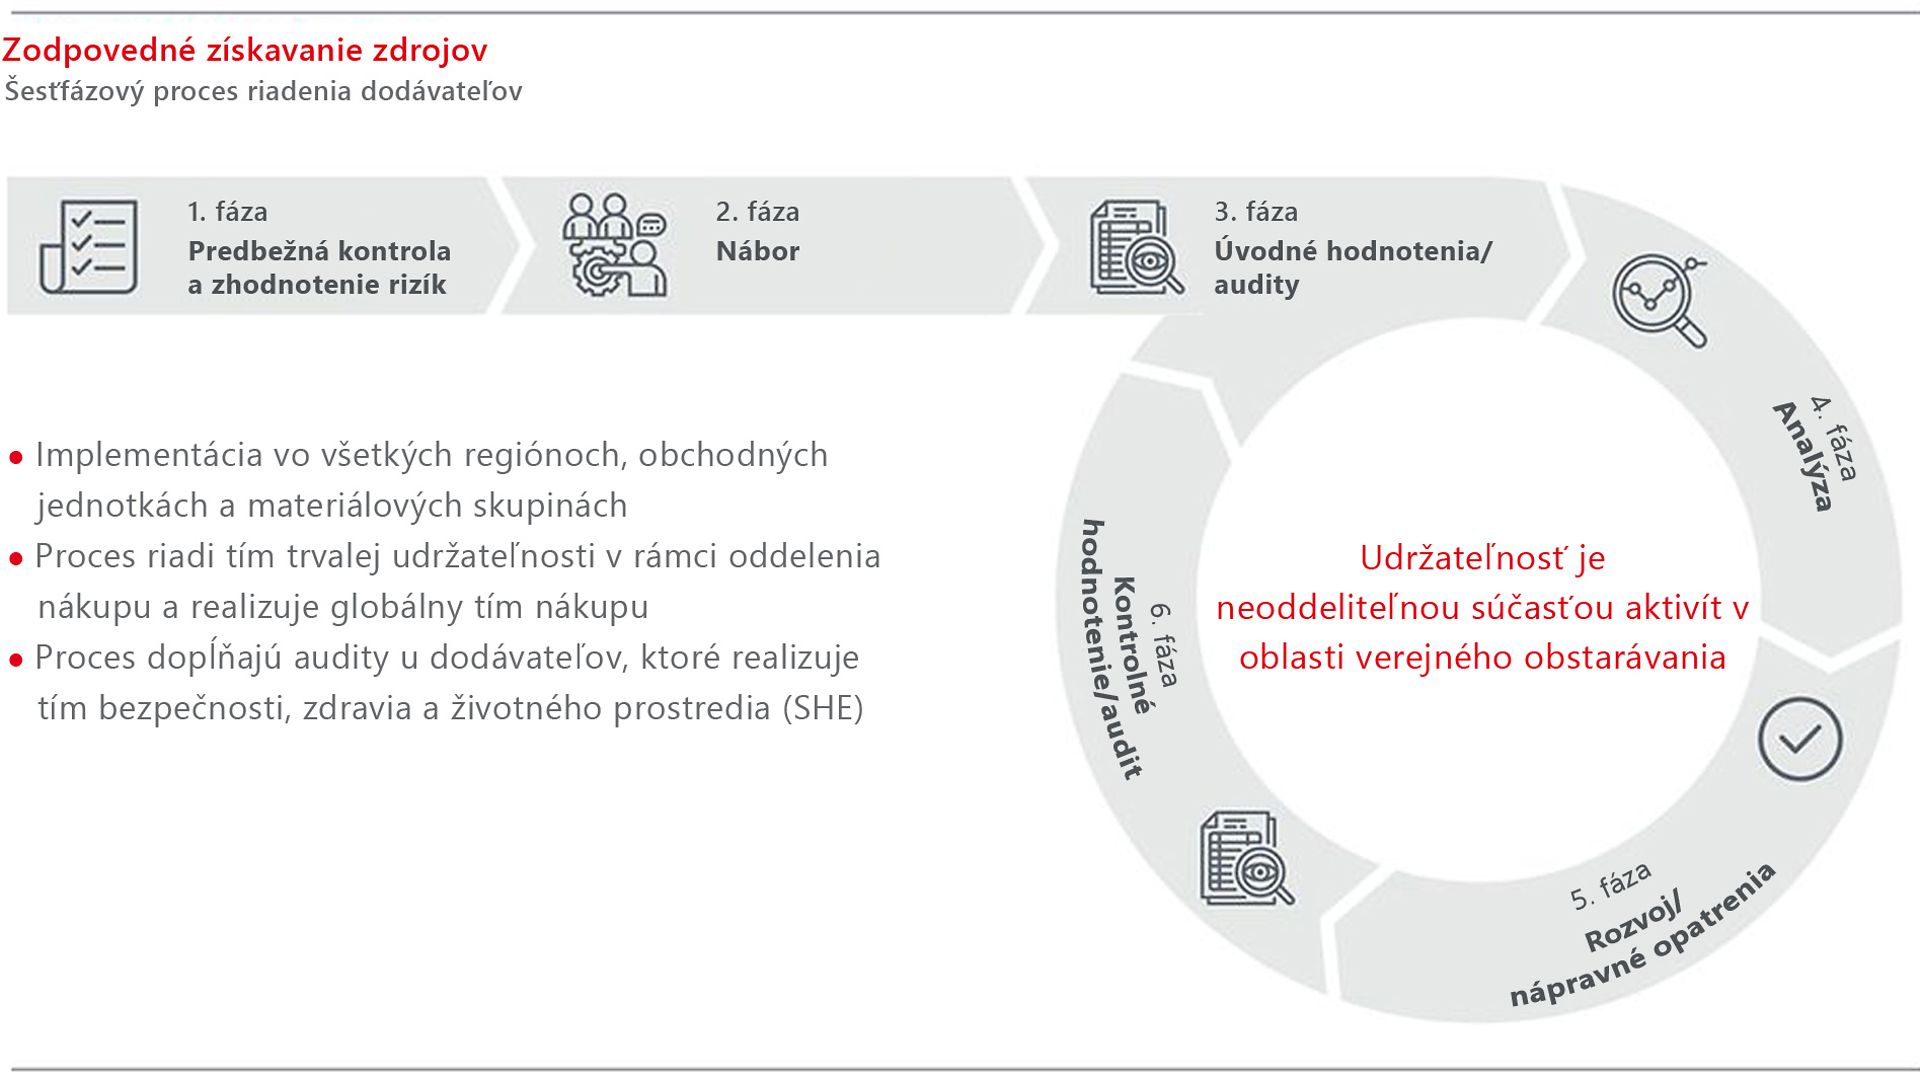 Grafické znázornenie procesu zodpovedného získavania zdrojov spoločnosti Henkel.